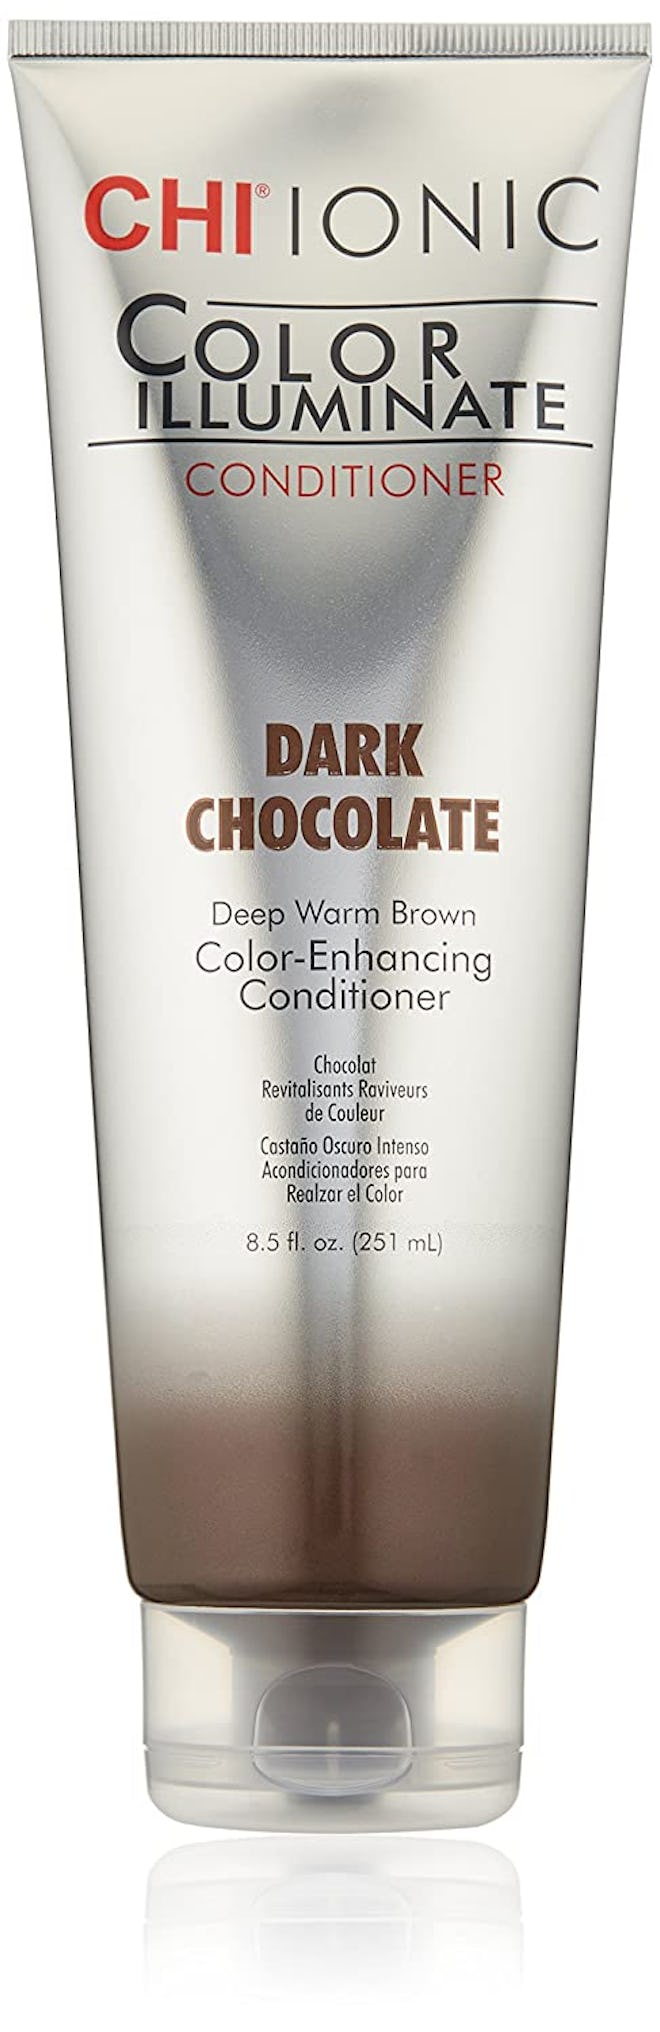 CHI Ionic Illuminate Color Dark Chocolate Conditioner